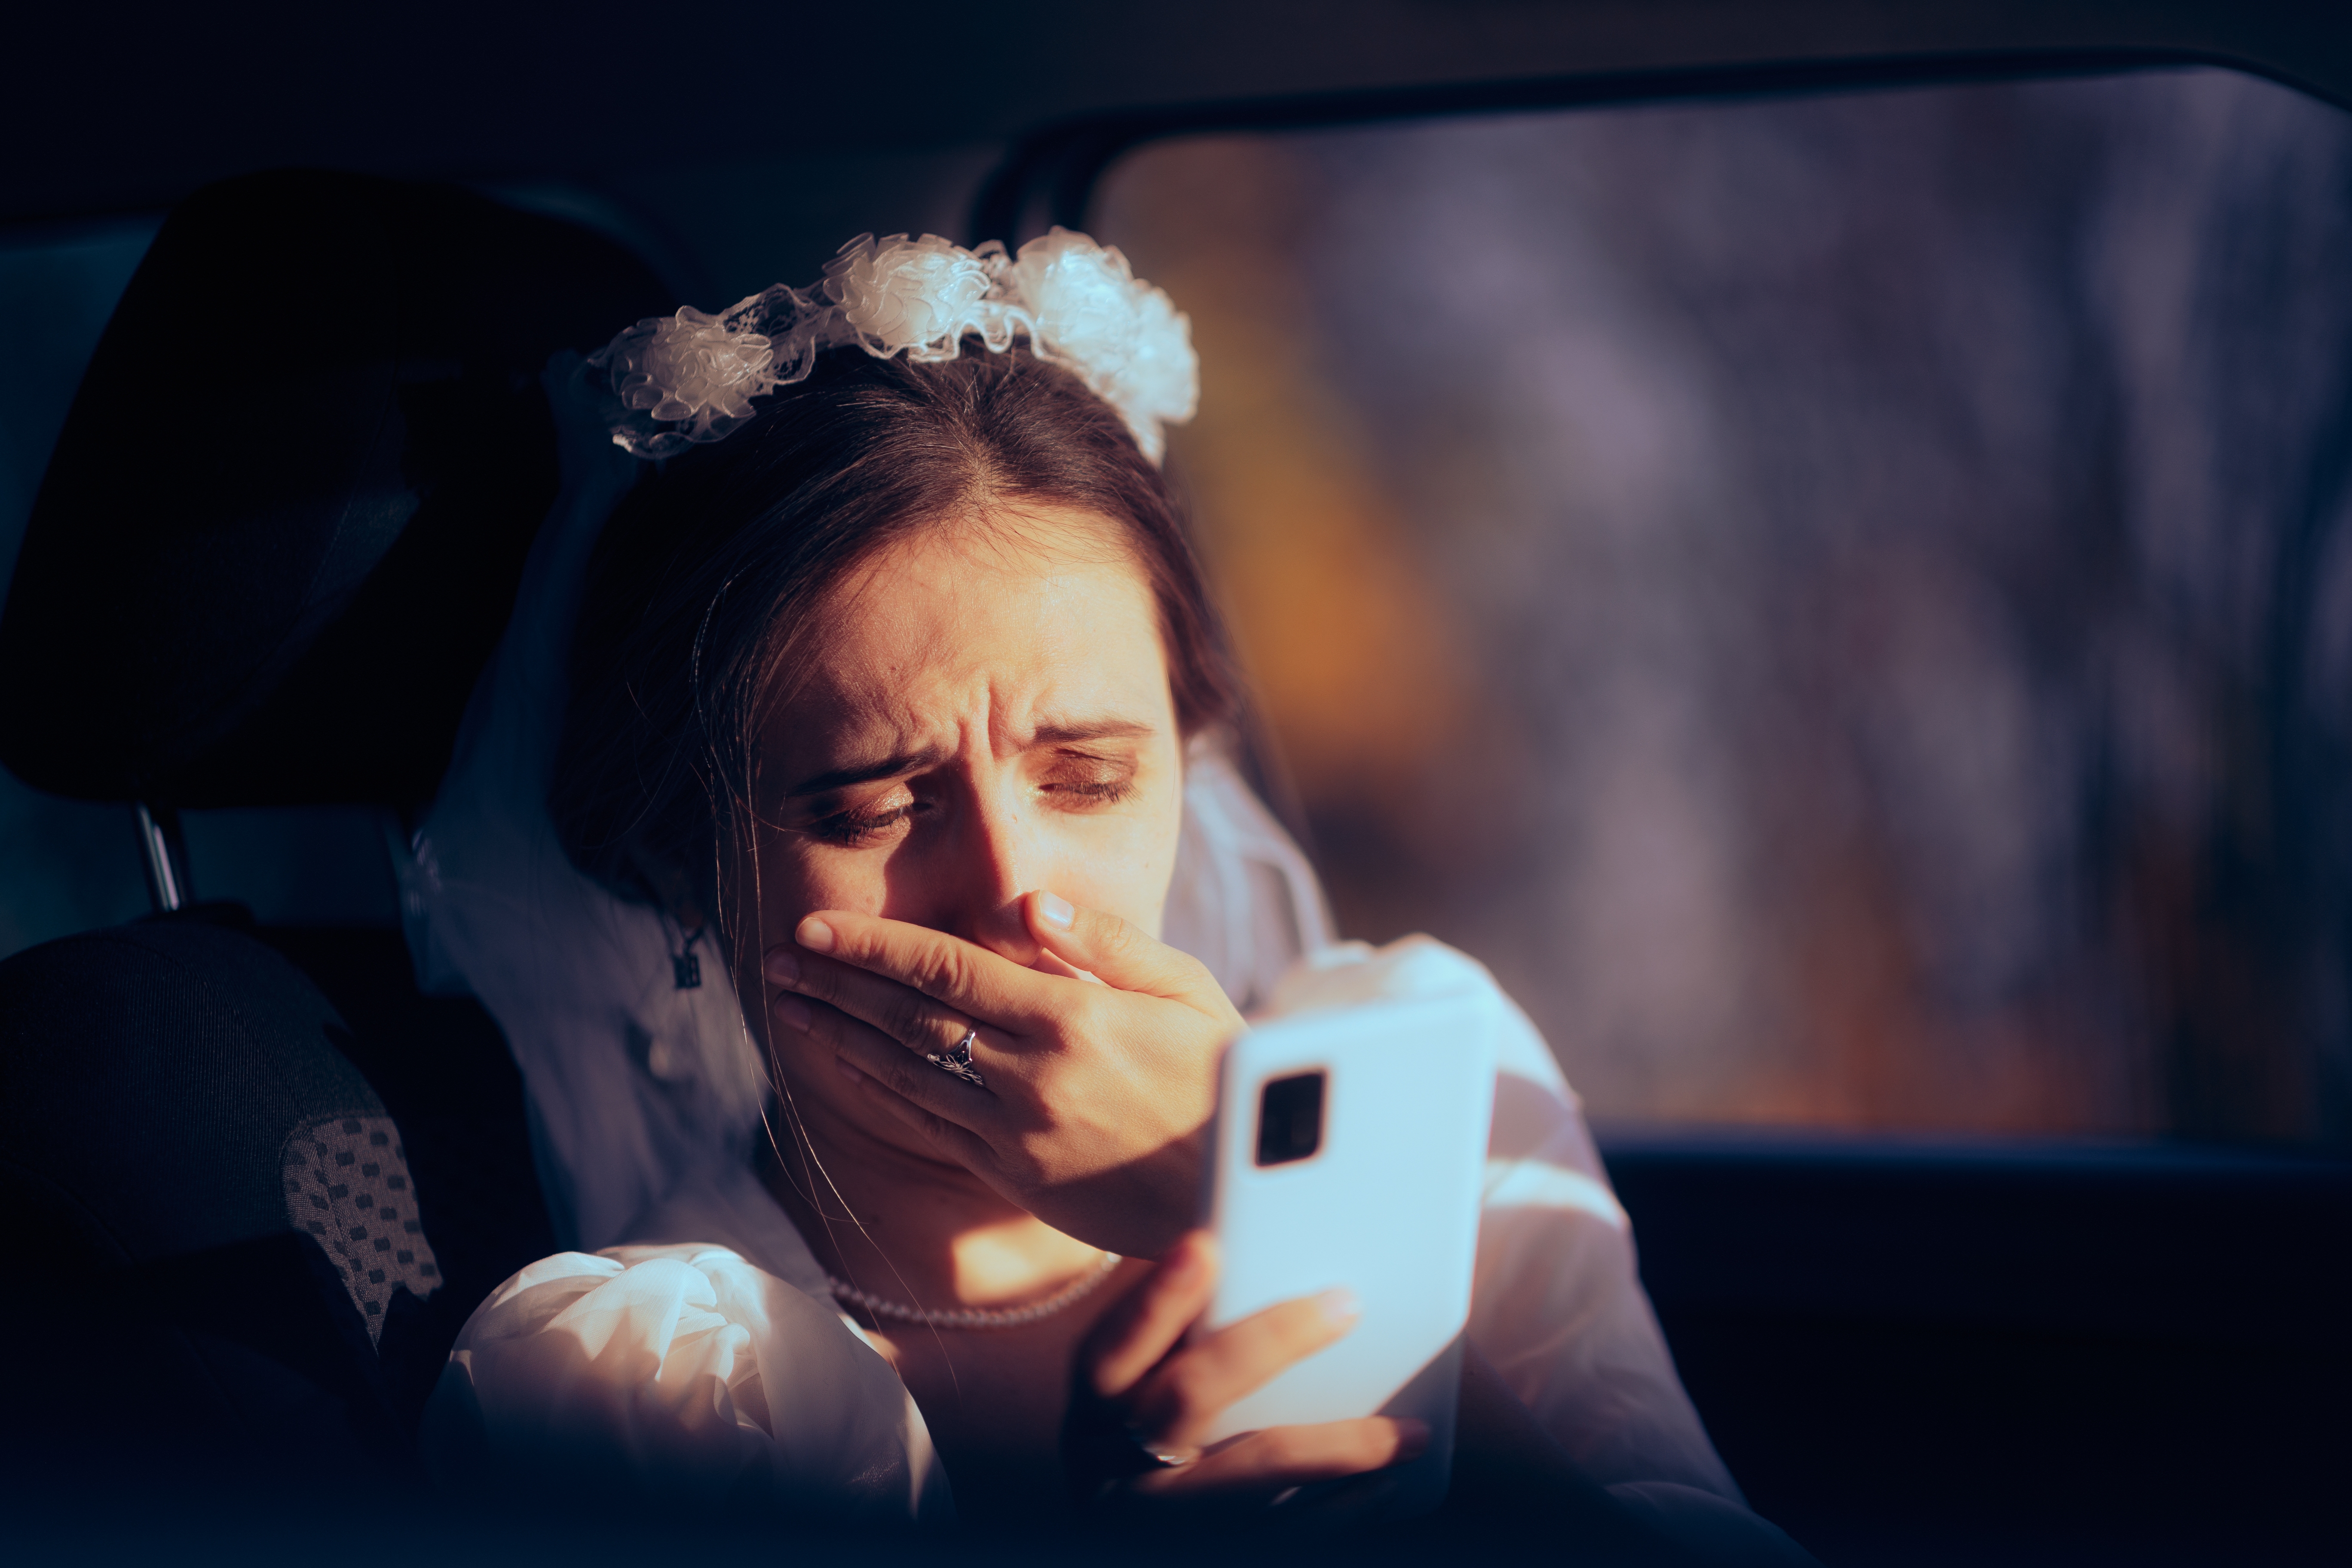 Une photo montrant une jeune mariée lisant quelque chose de bouleversant sur son téléphone. | Source : Shutterstock/Nicoleta Ionescu